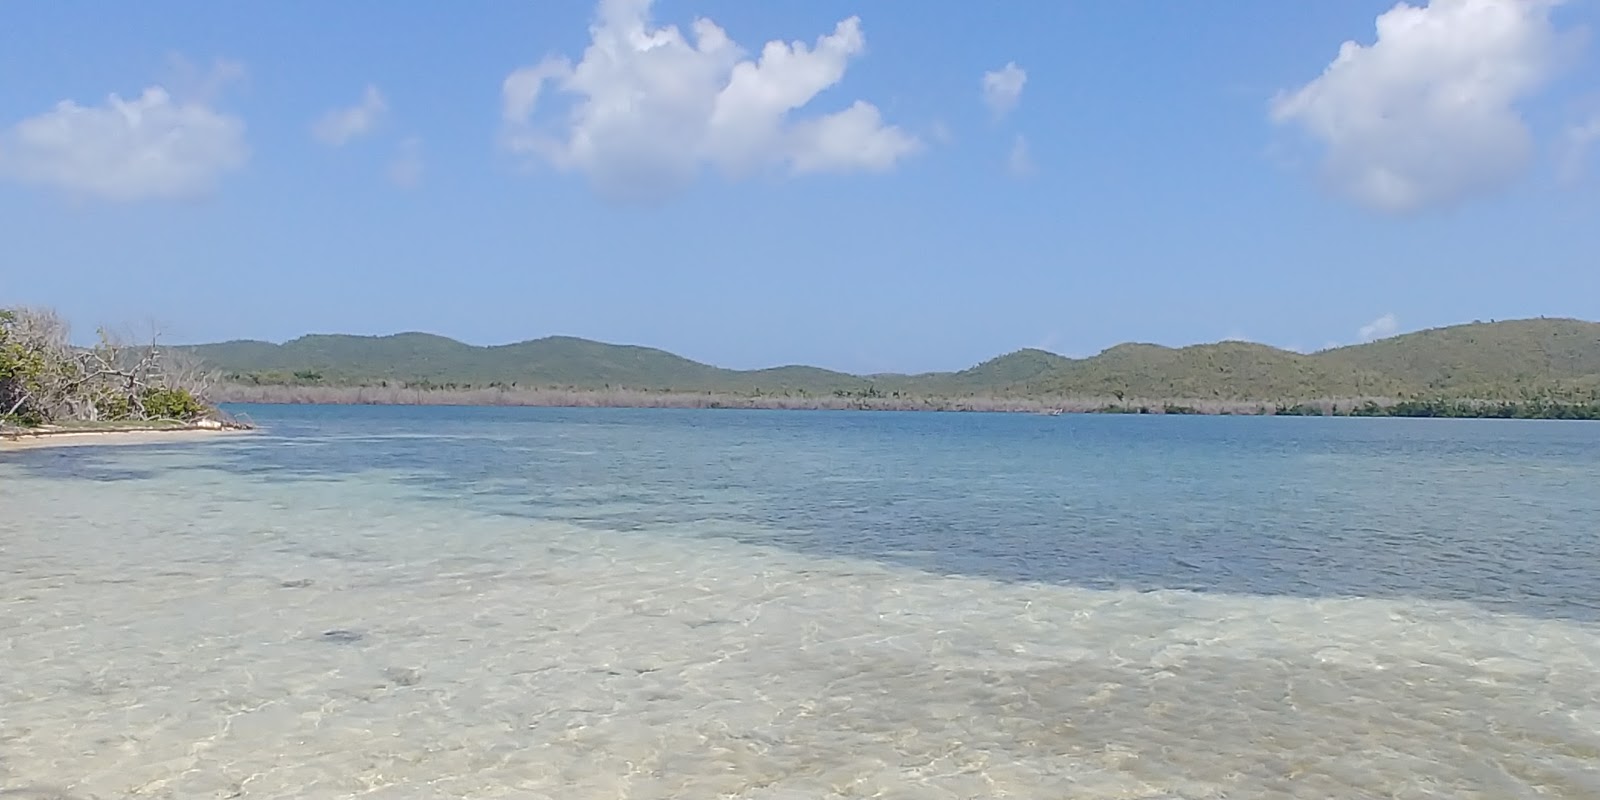 Photo de Blue beach - endroit populaire parmi les connaisseurs de la détente